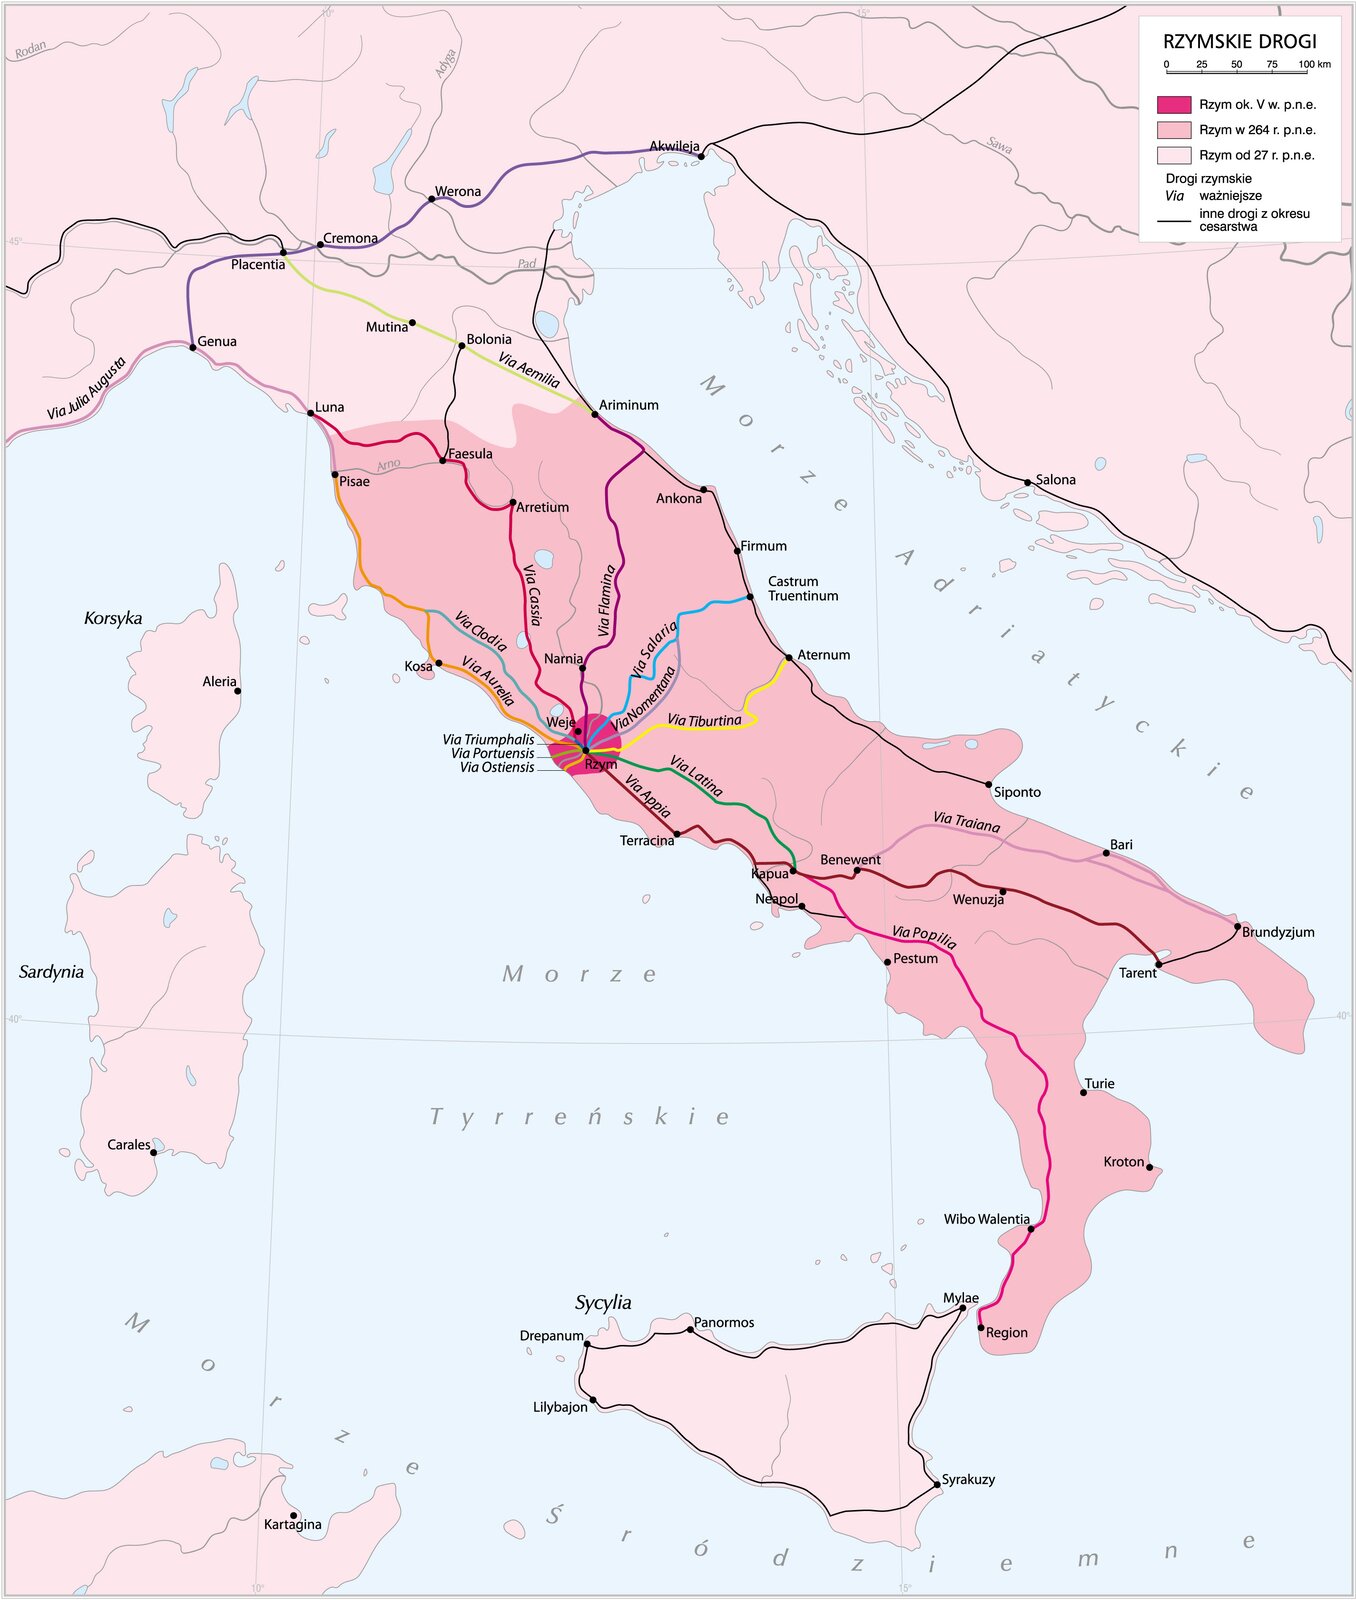 Sieć dróg w imperium rzymskim Sieć dróg w imperium rzymskim Źródło: Krystian Chariza i zespół, licencja: CC BY 3.0.